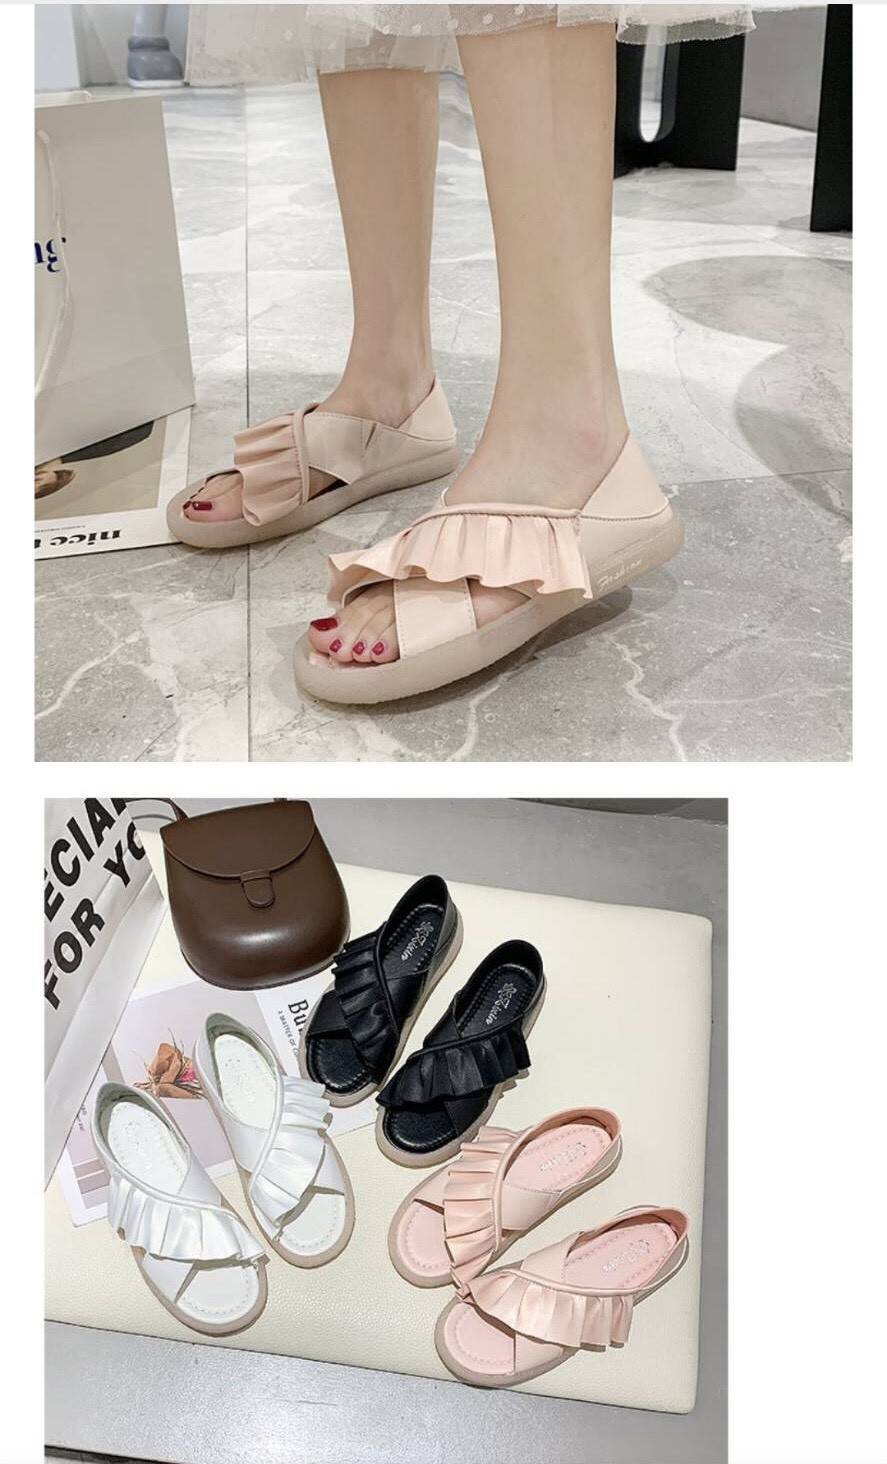 รองเท้าแฟชั่น รองเท้าผู้หญิงสไตล์เกาหลี ยางนิ่มใส่สบาย เบอร์36-40 3สี